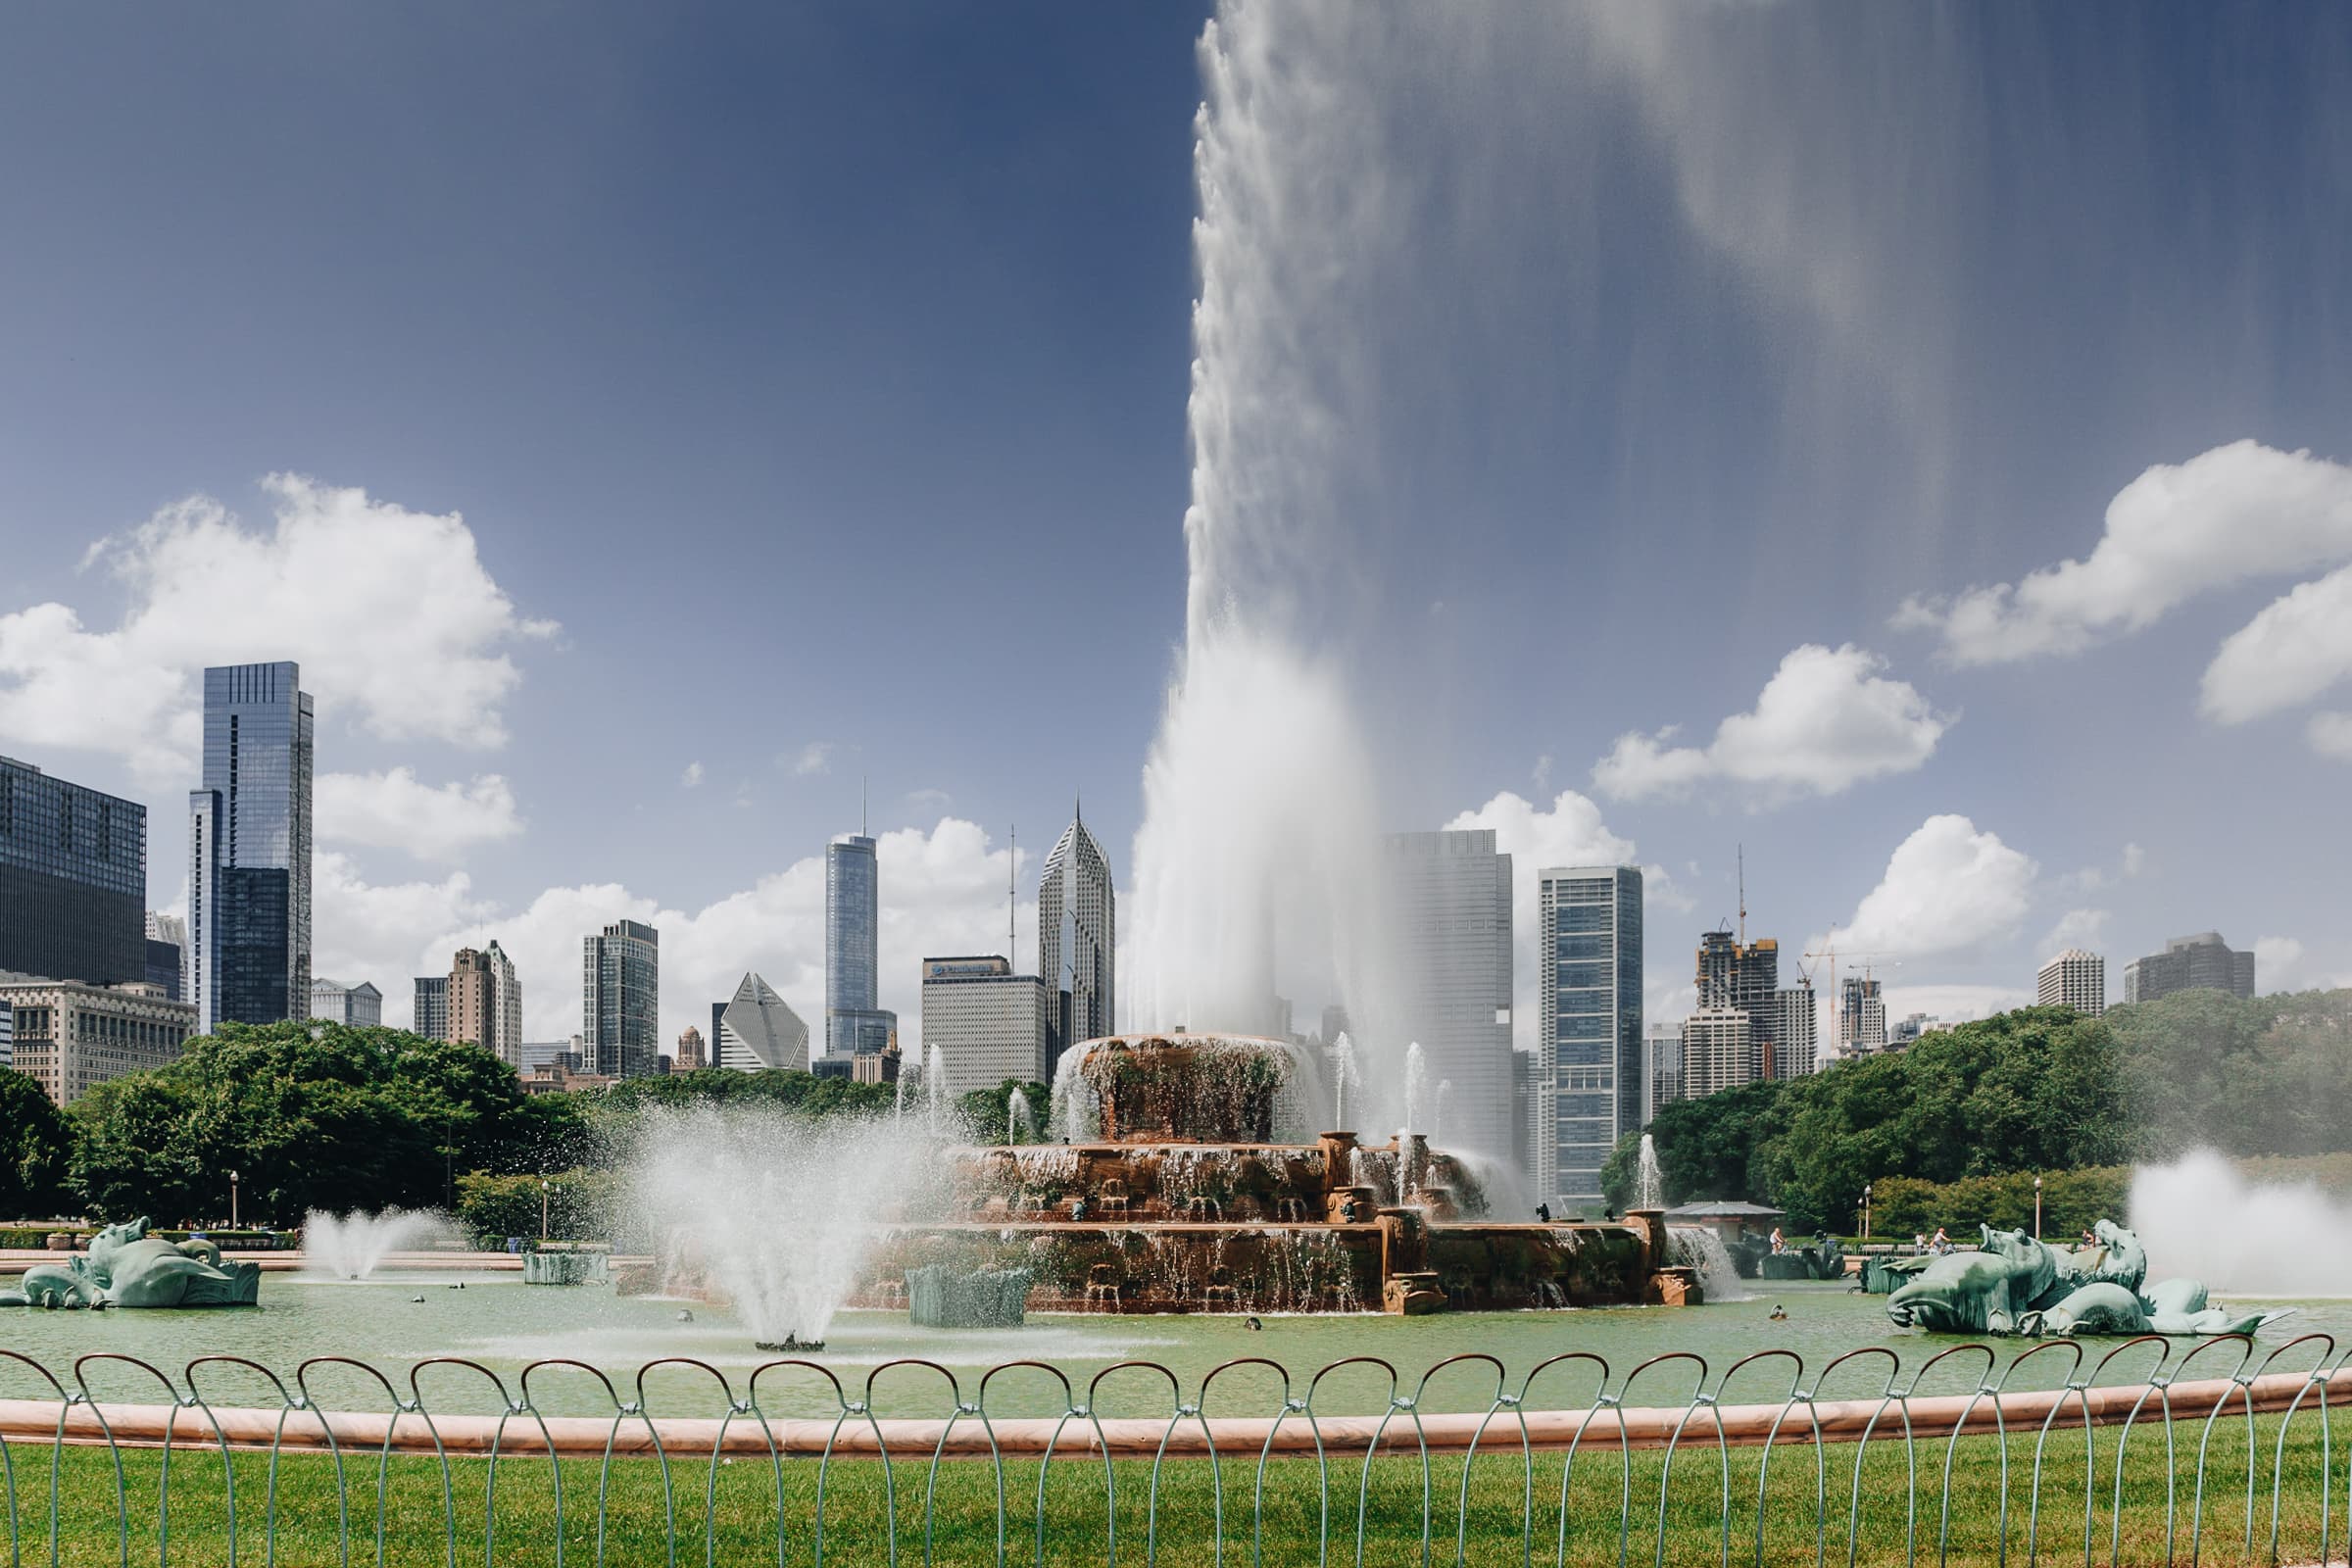 Chicago Sehenswürdigkeiten Buckingham Fountain Brunnen Al Bundy Eine schreckliche nette Familie